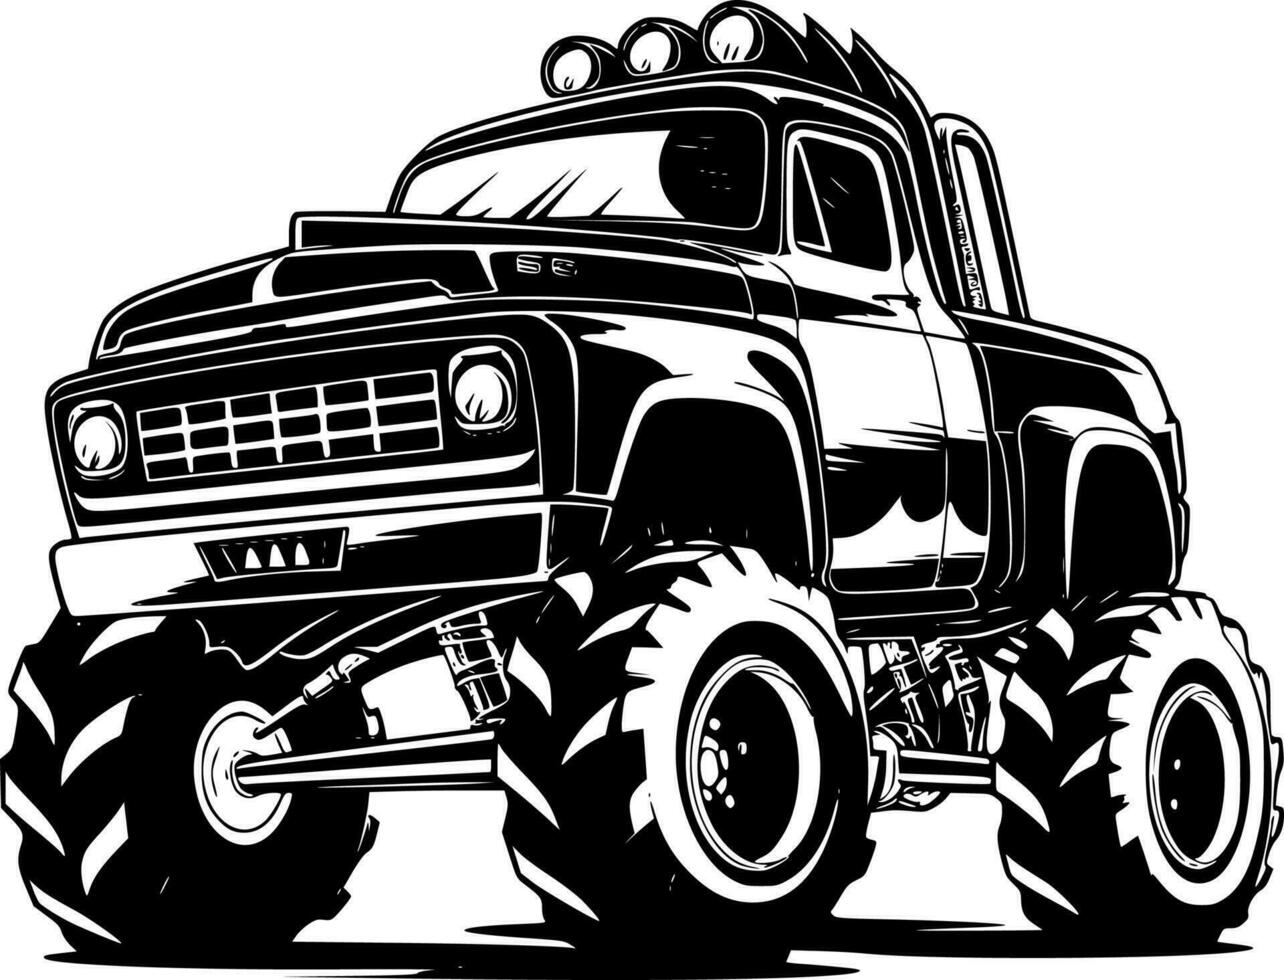 monstre un camion - haute qualité vecteur logo - vecteur illustration idéal pour T-shirt graphique